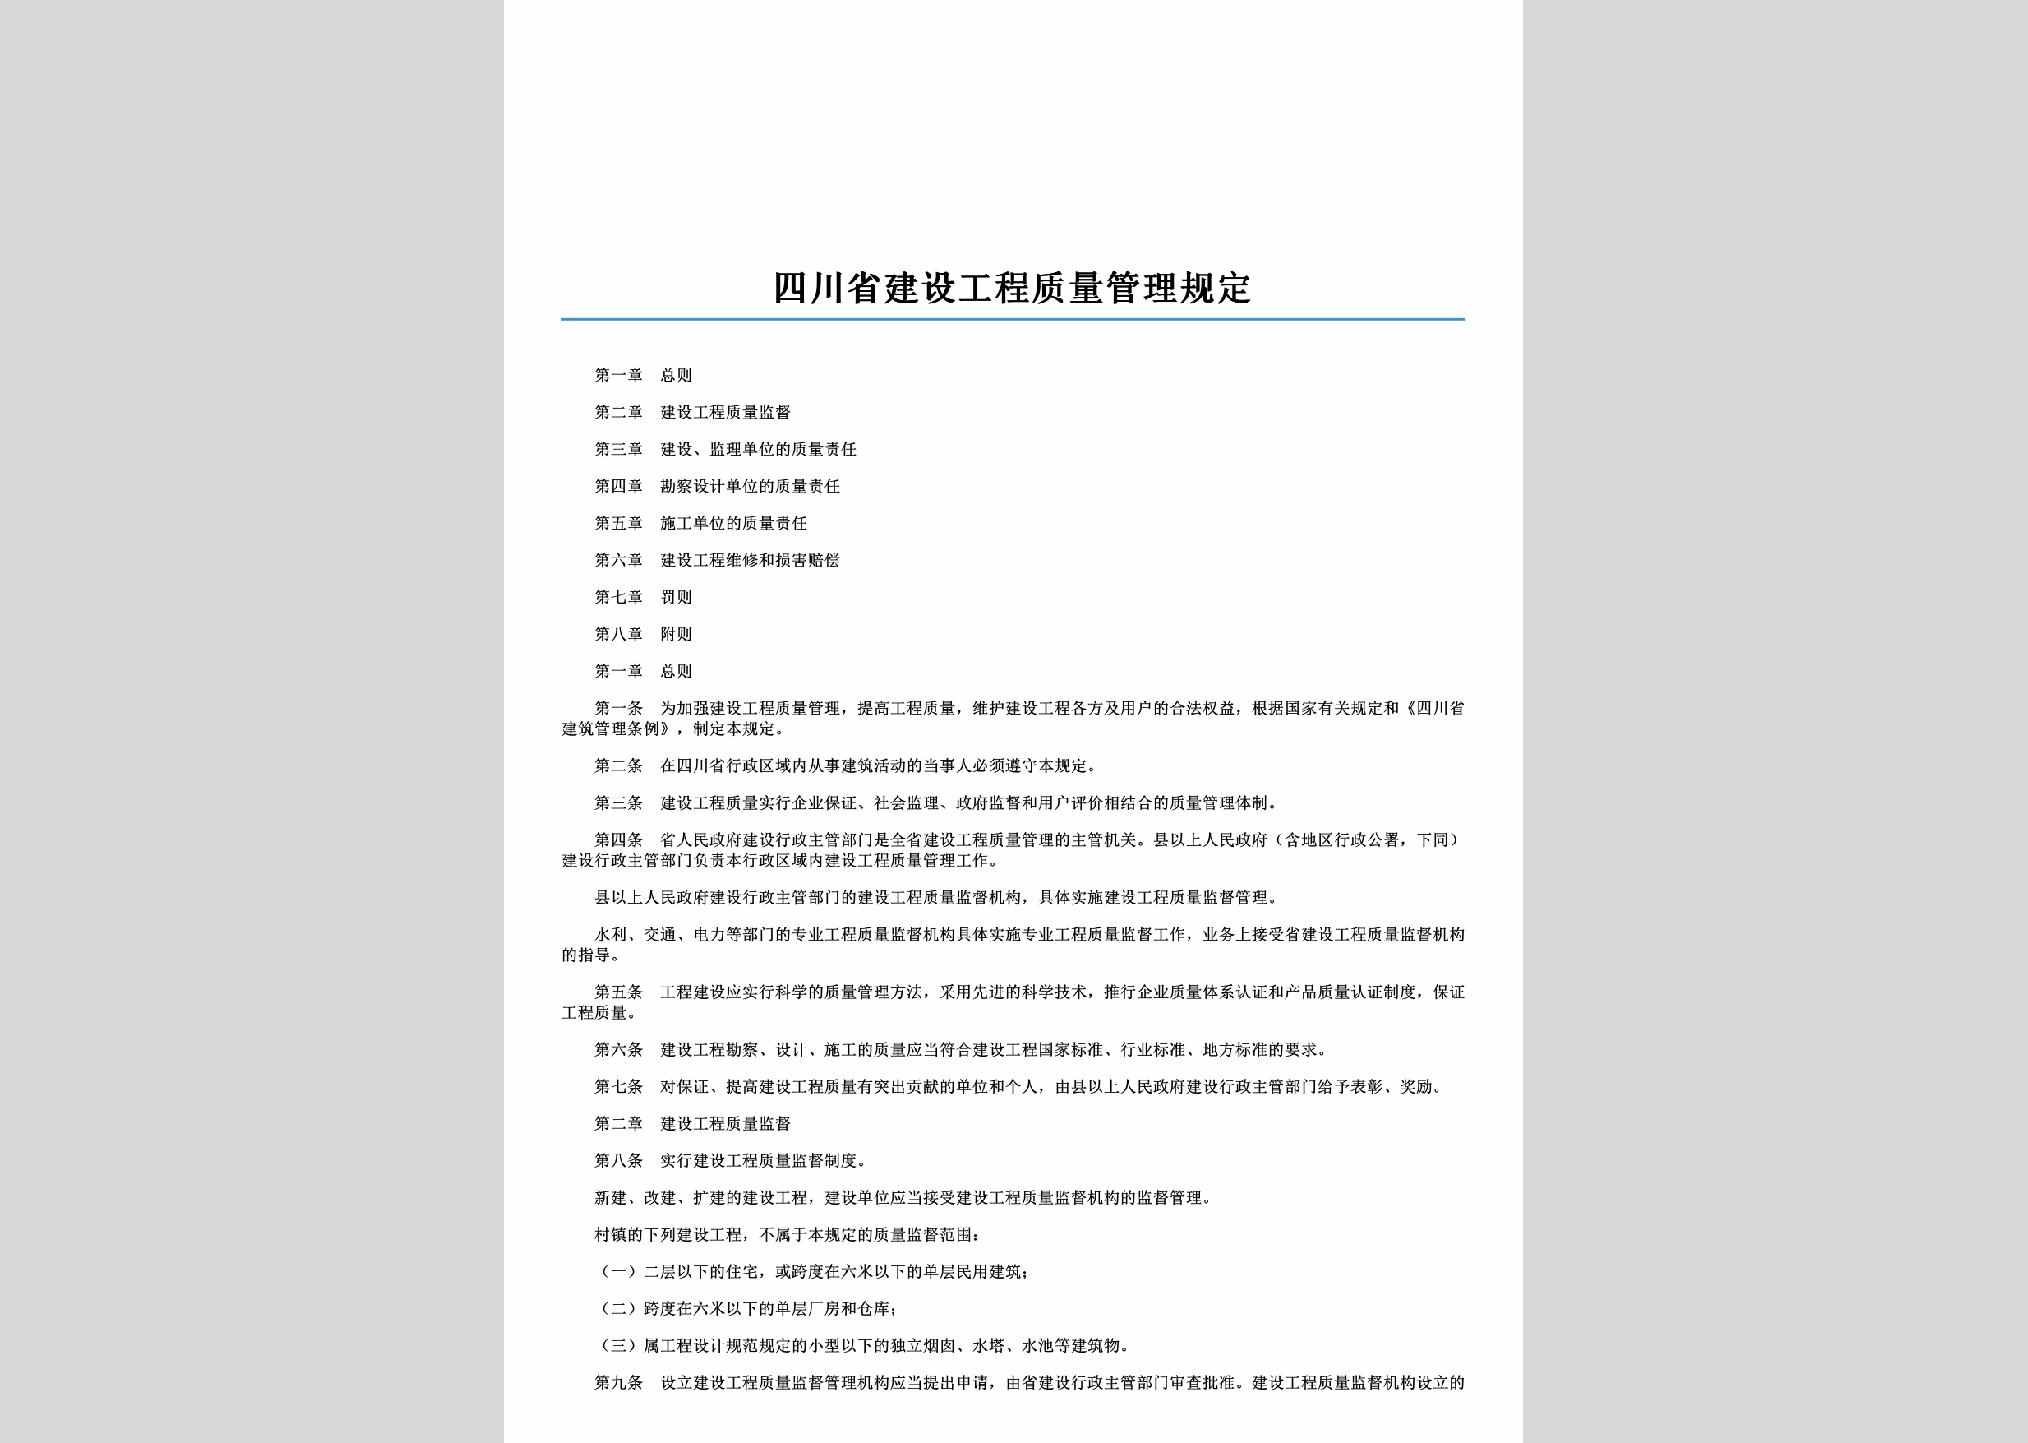 SC-GCZLGLGD-1997：四川省建设工程质量管理规定